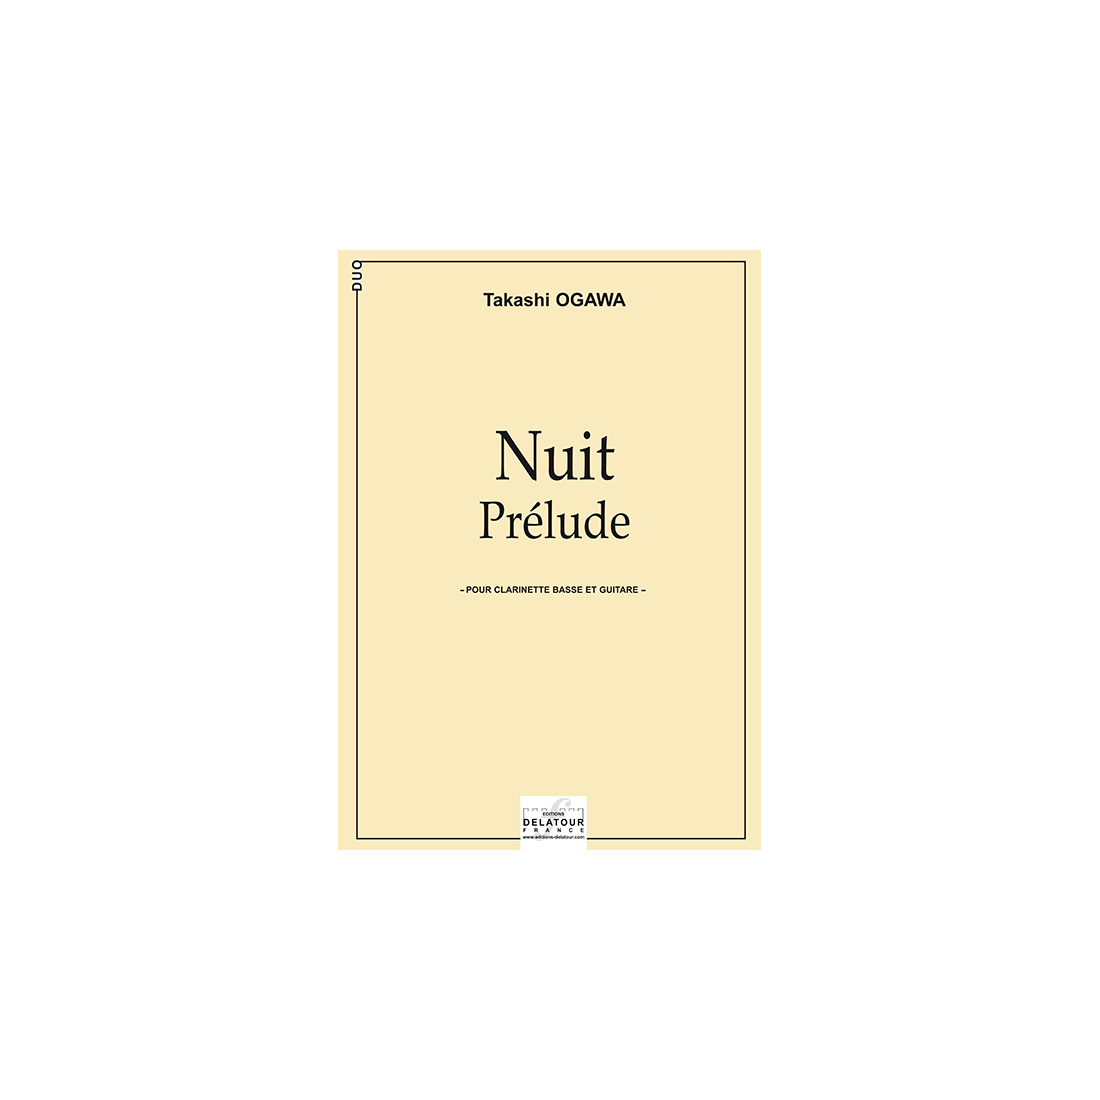 Nuit - Prélude pour clarinette basse et guitare